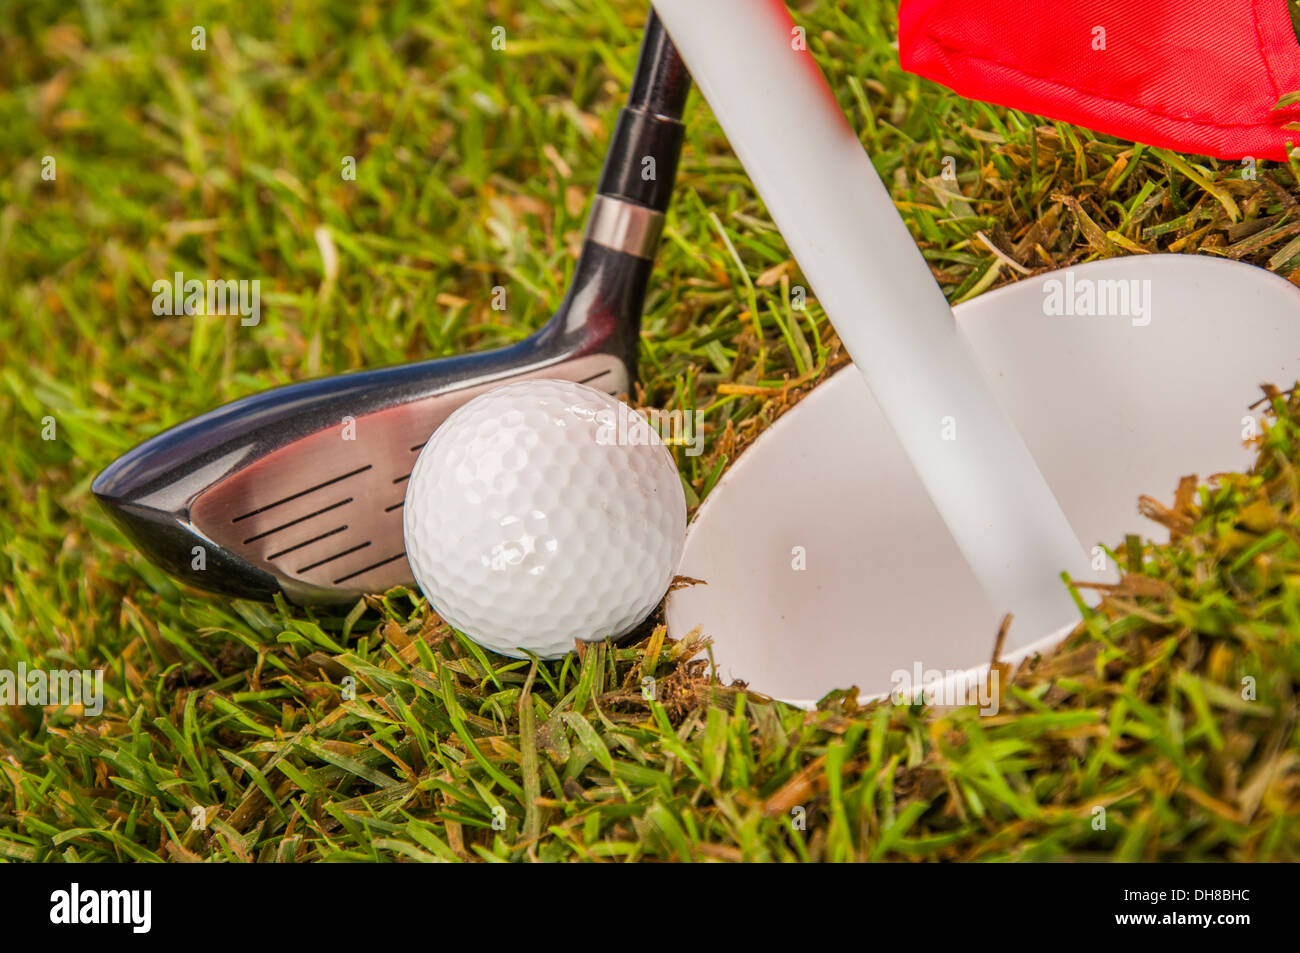 Accessoire de golf image stock. Image du accessoire, bille - 23315895